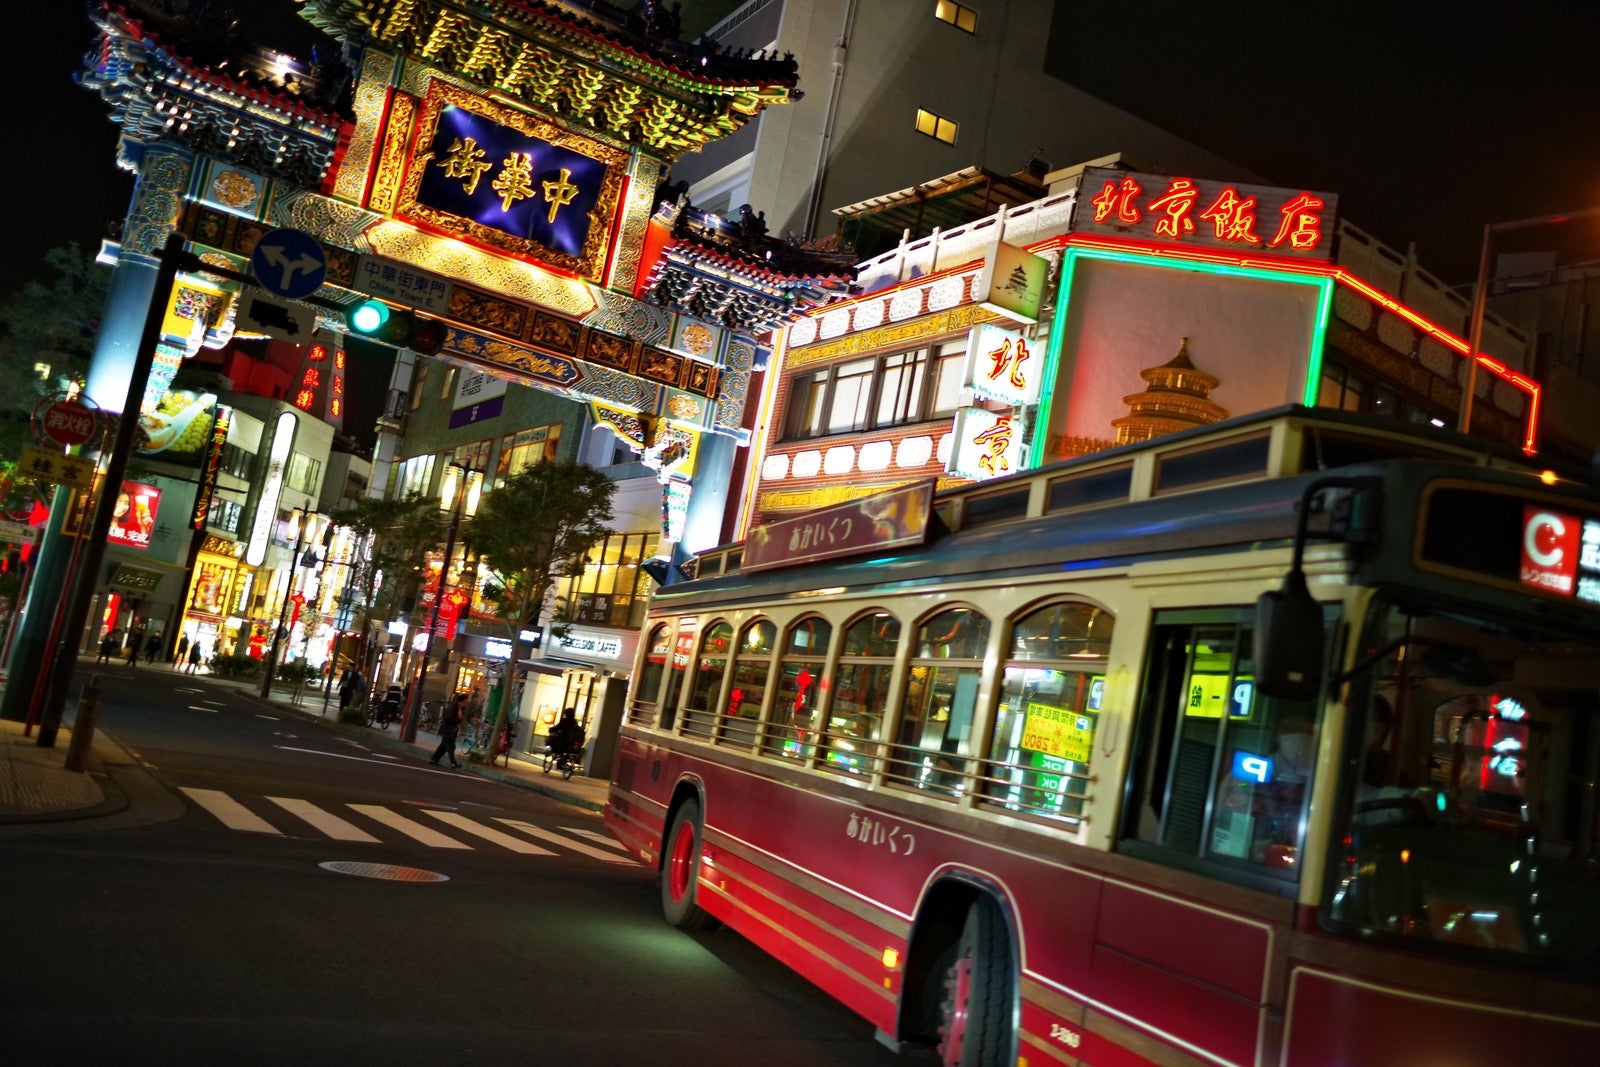 「横浜中華街と横浜の名物バス「あかいくつ」」の写真